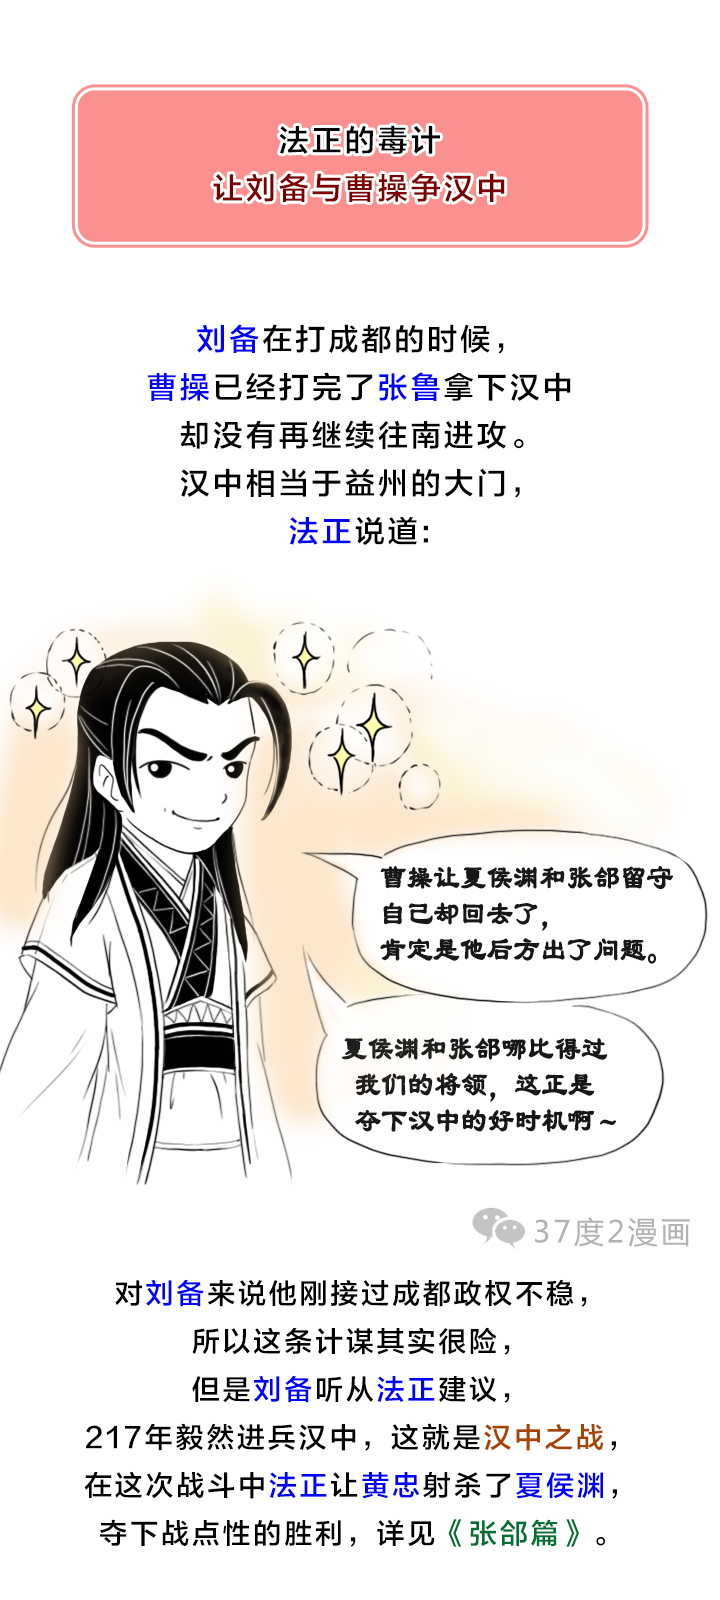 为什么说刘备的转折点是有了军师法正之后？